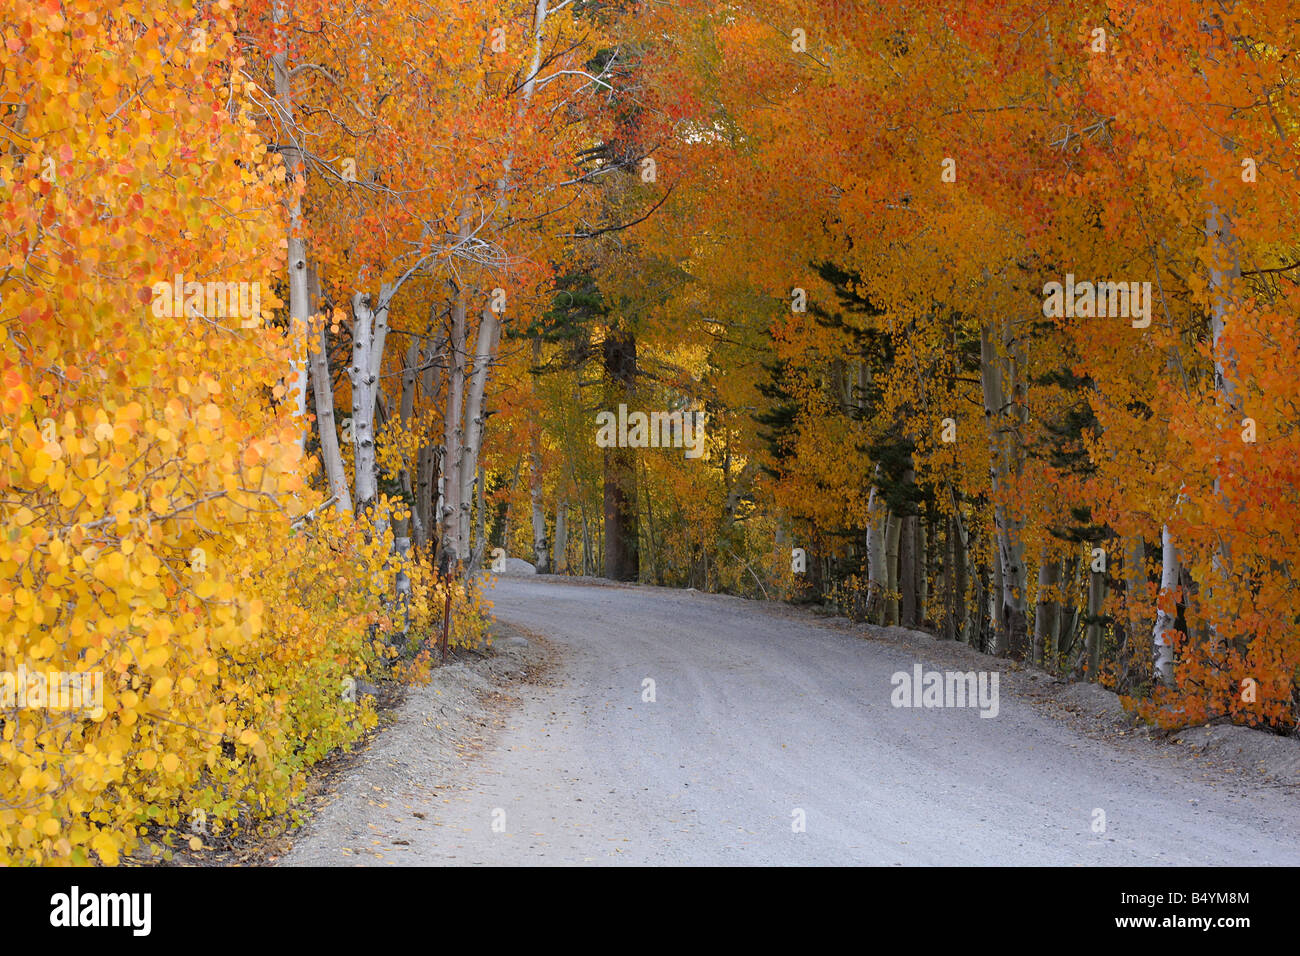 Un chemin de terre au cours de l'automne abondamment bordée de jaune brillant quaking trembles. Banque D'Images